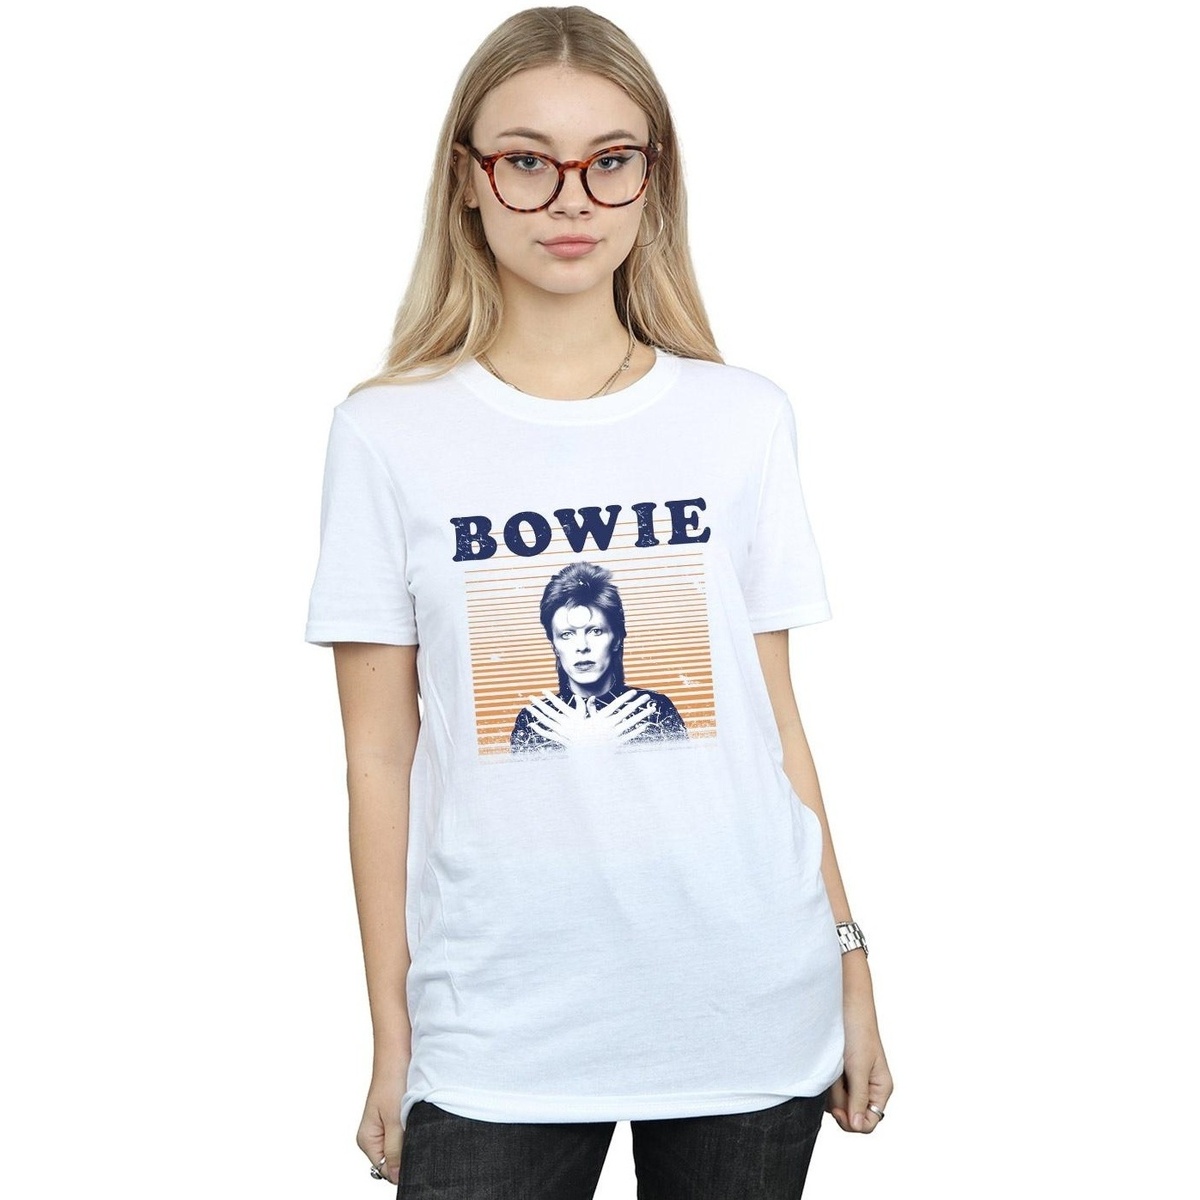 textil Mujer Camisetas manga larga David Bowie Orange Stripes Blanco